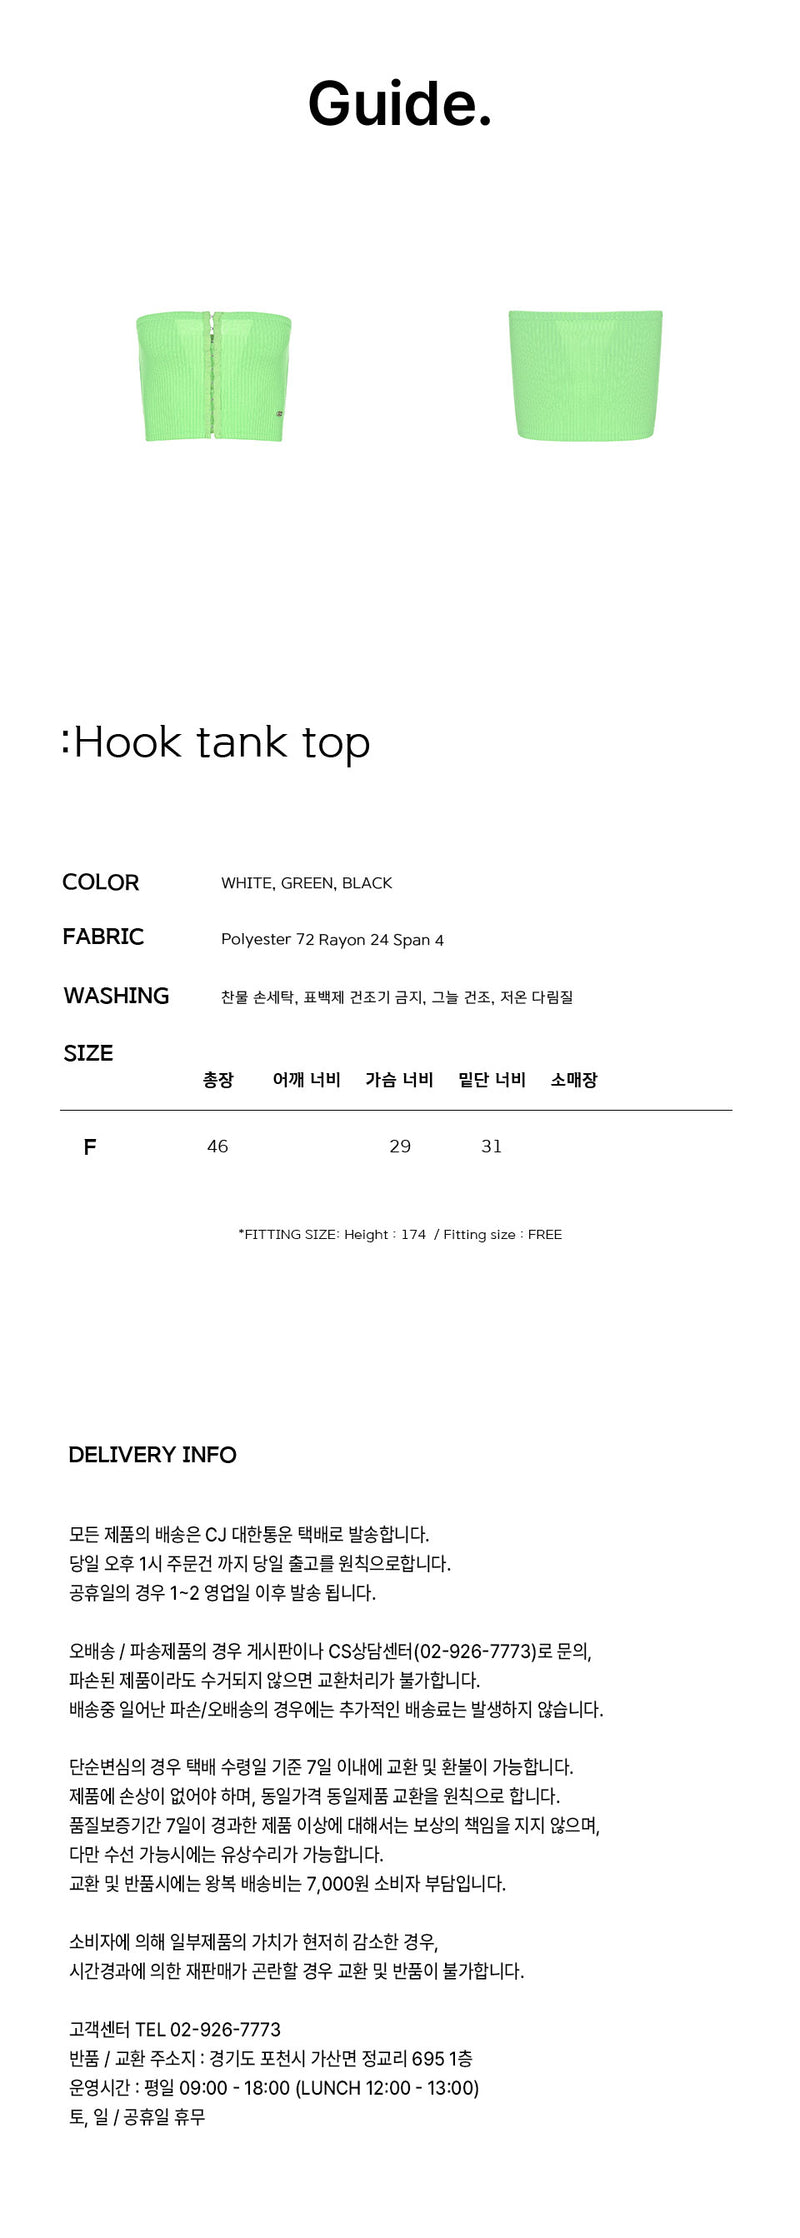 フックタンクトップ / Hook tank top